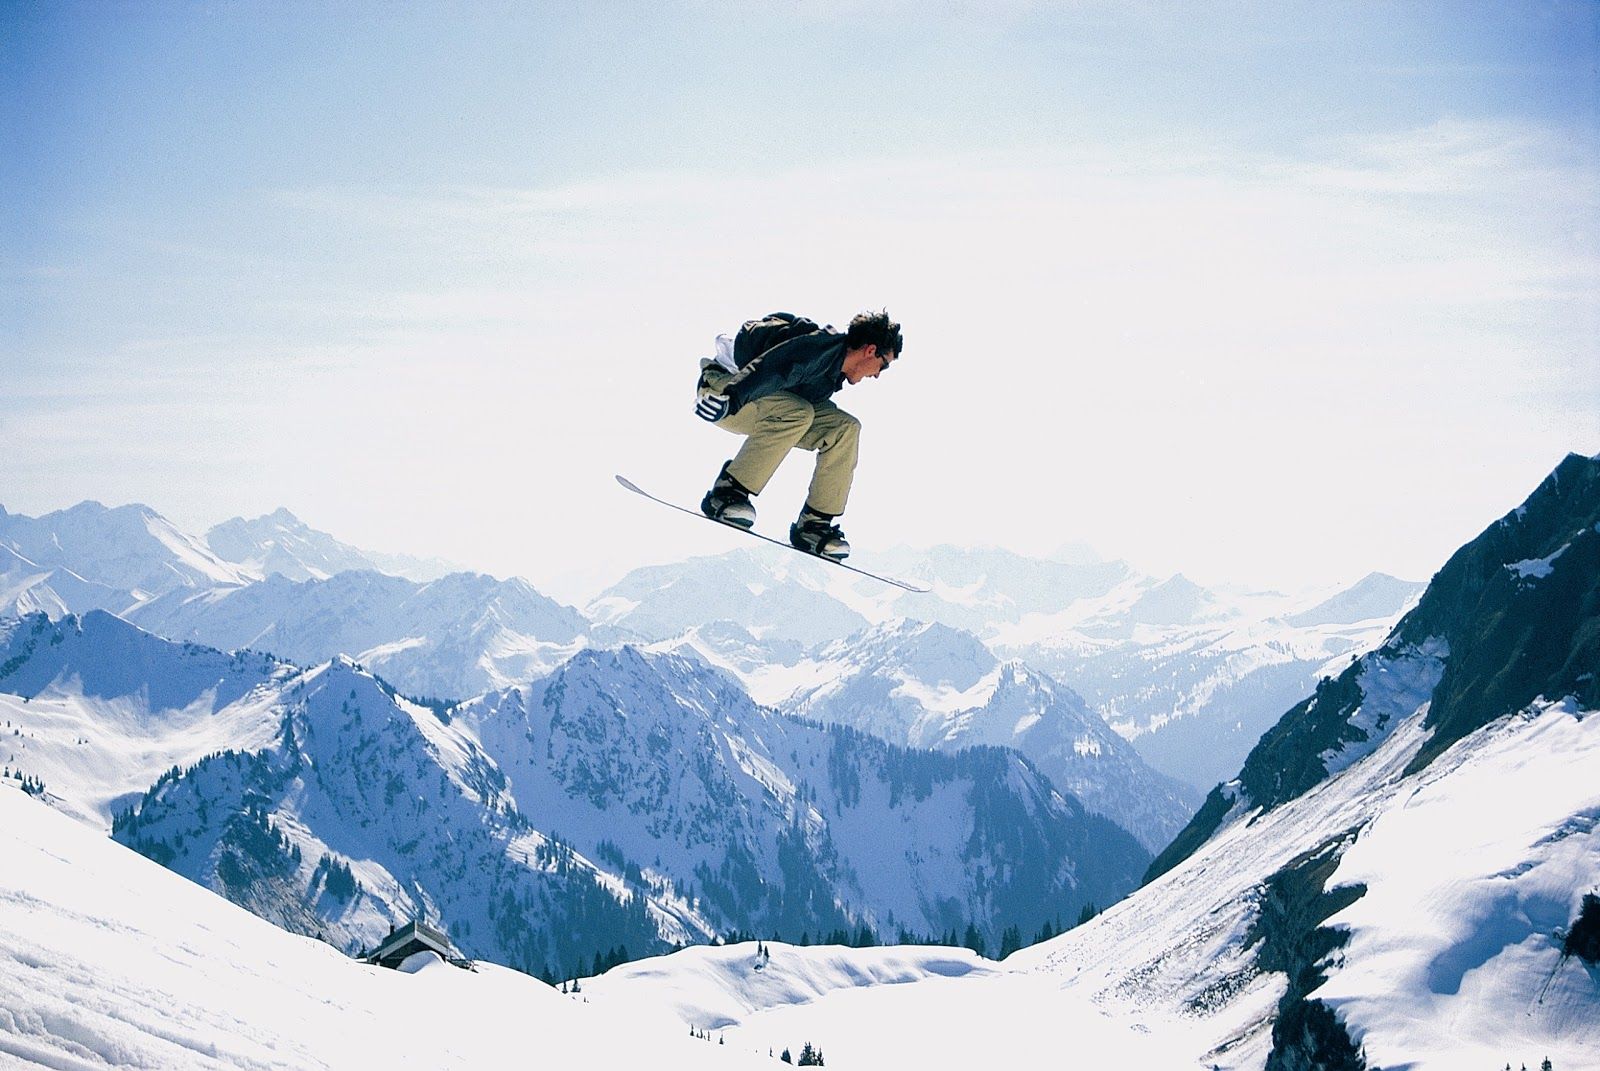 Snowboarder Wallpaper. Snowboarder Wallpaper, Snowboarder 4K Wallpaper and Snowboarder Wallpaper 3500X2500